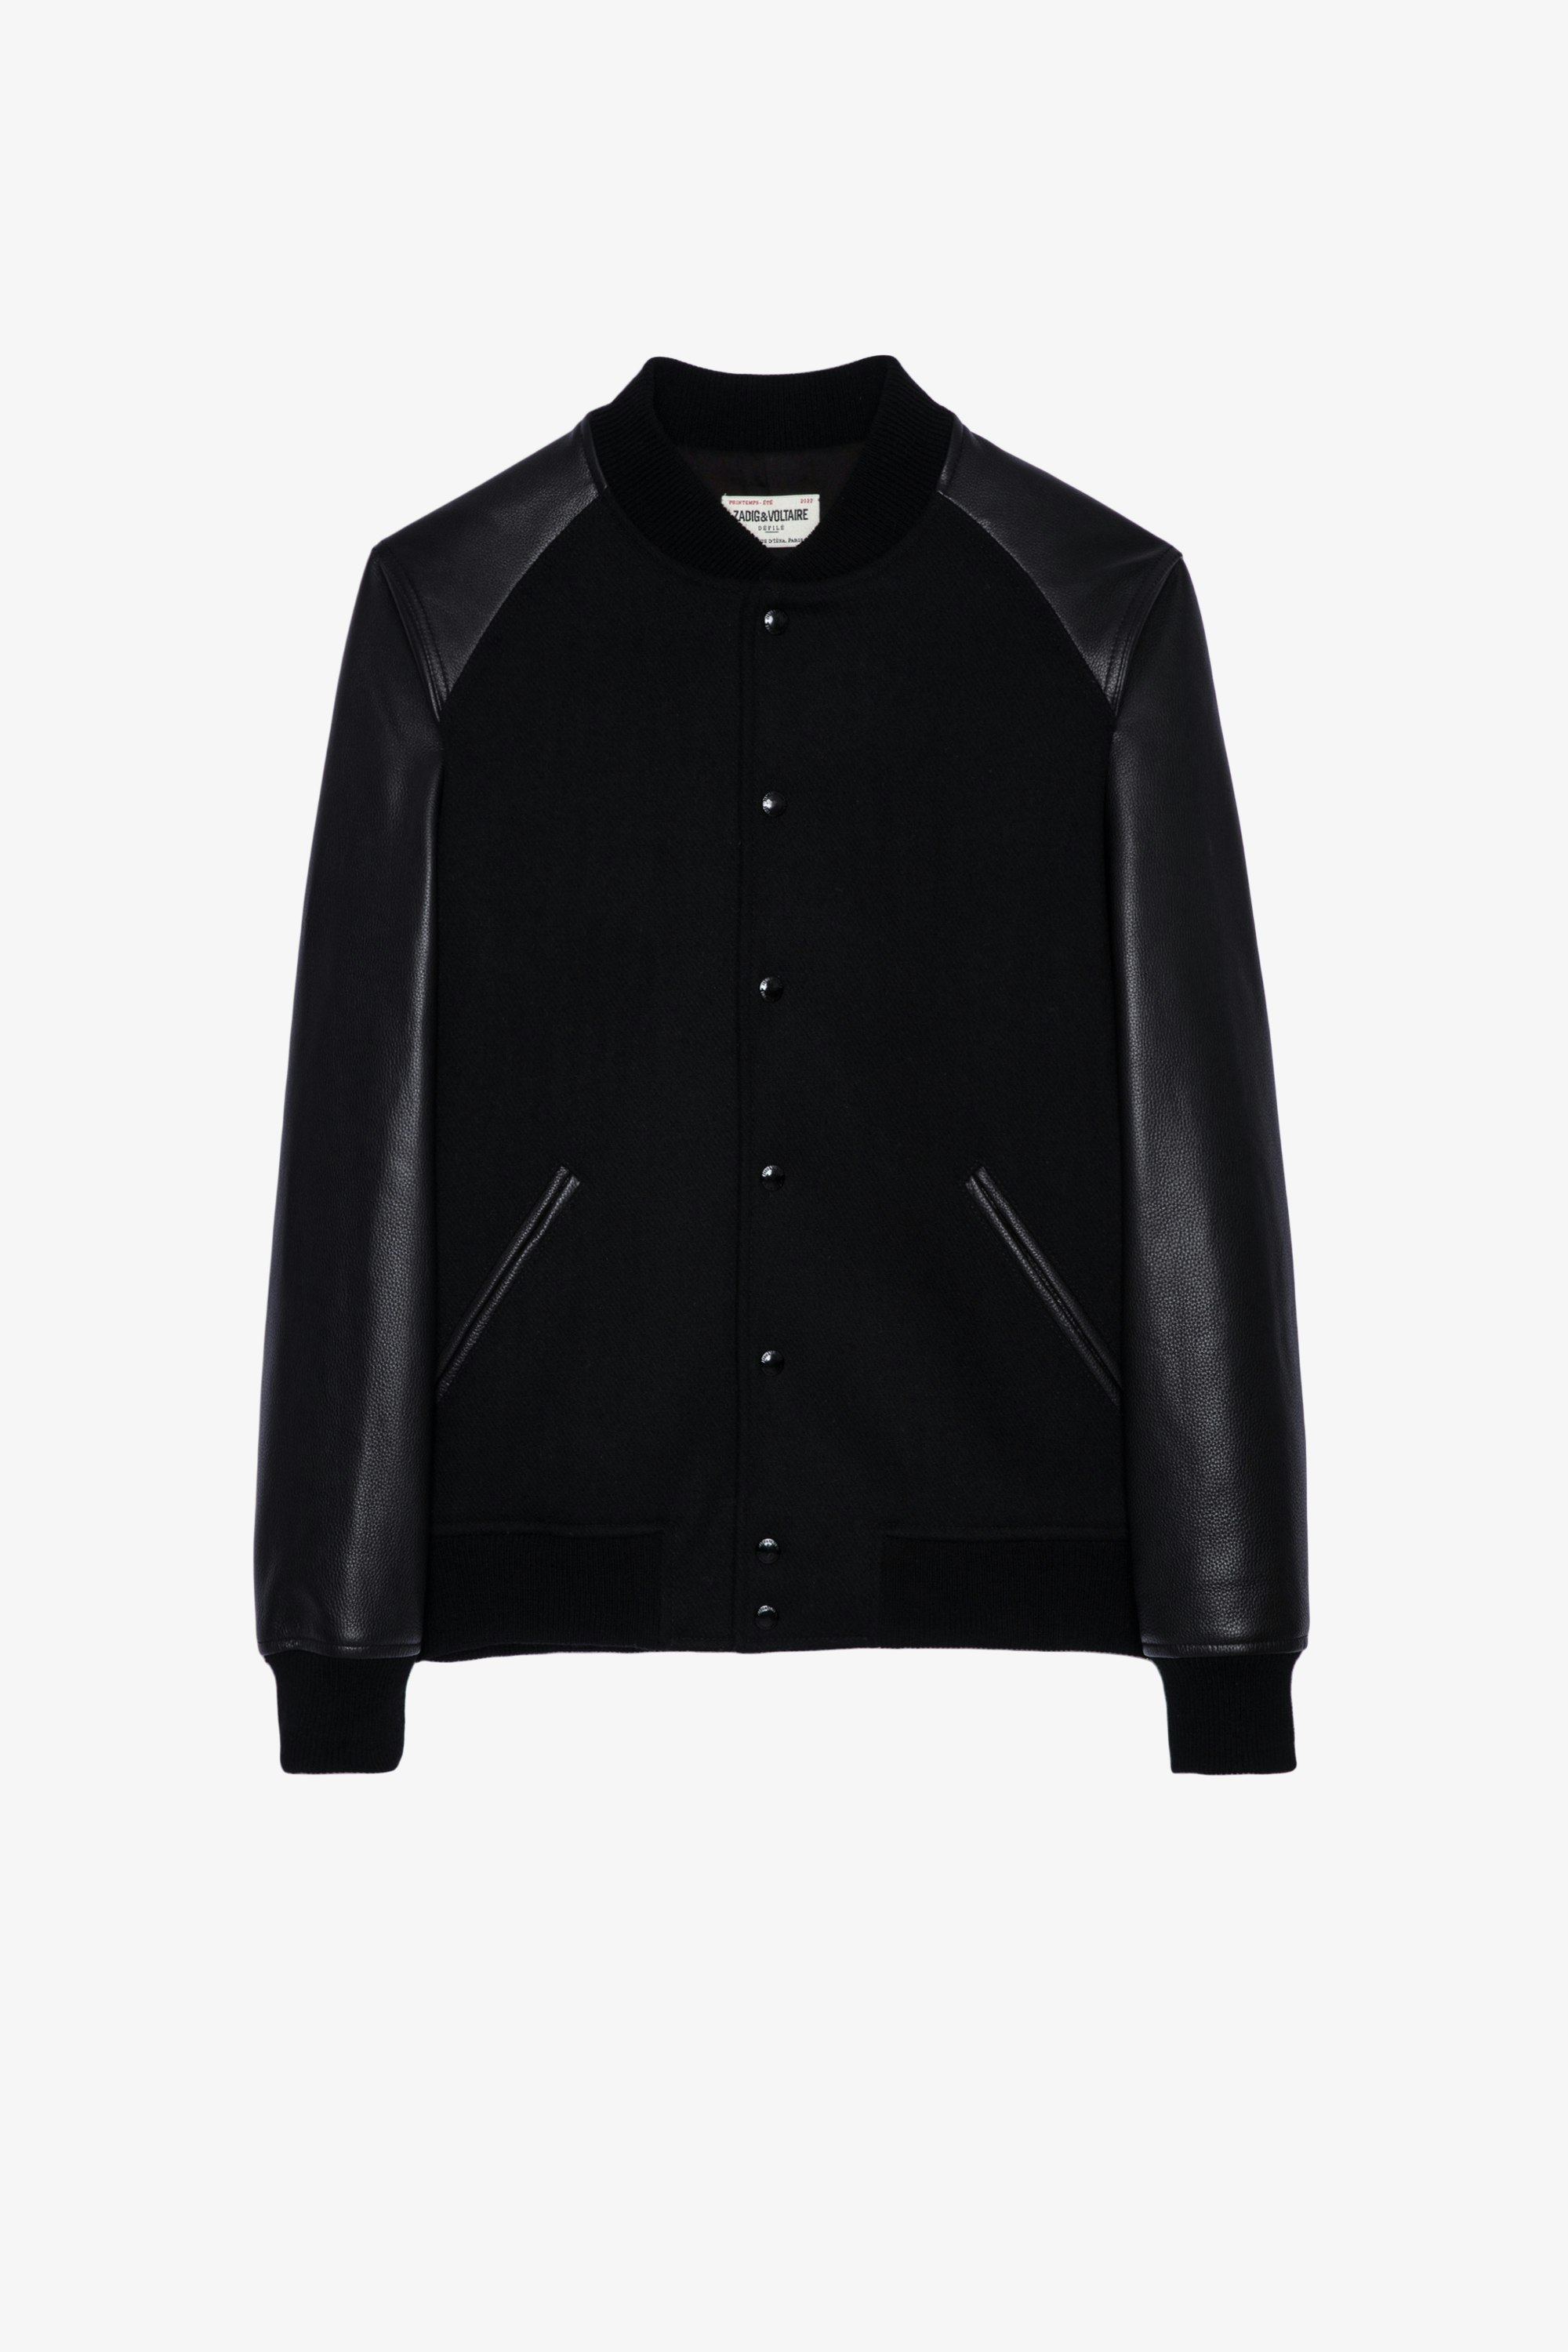 Birdieh Jacket Men's black dual-material varsity jacket